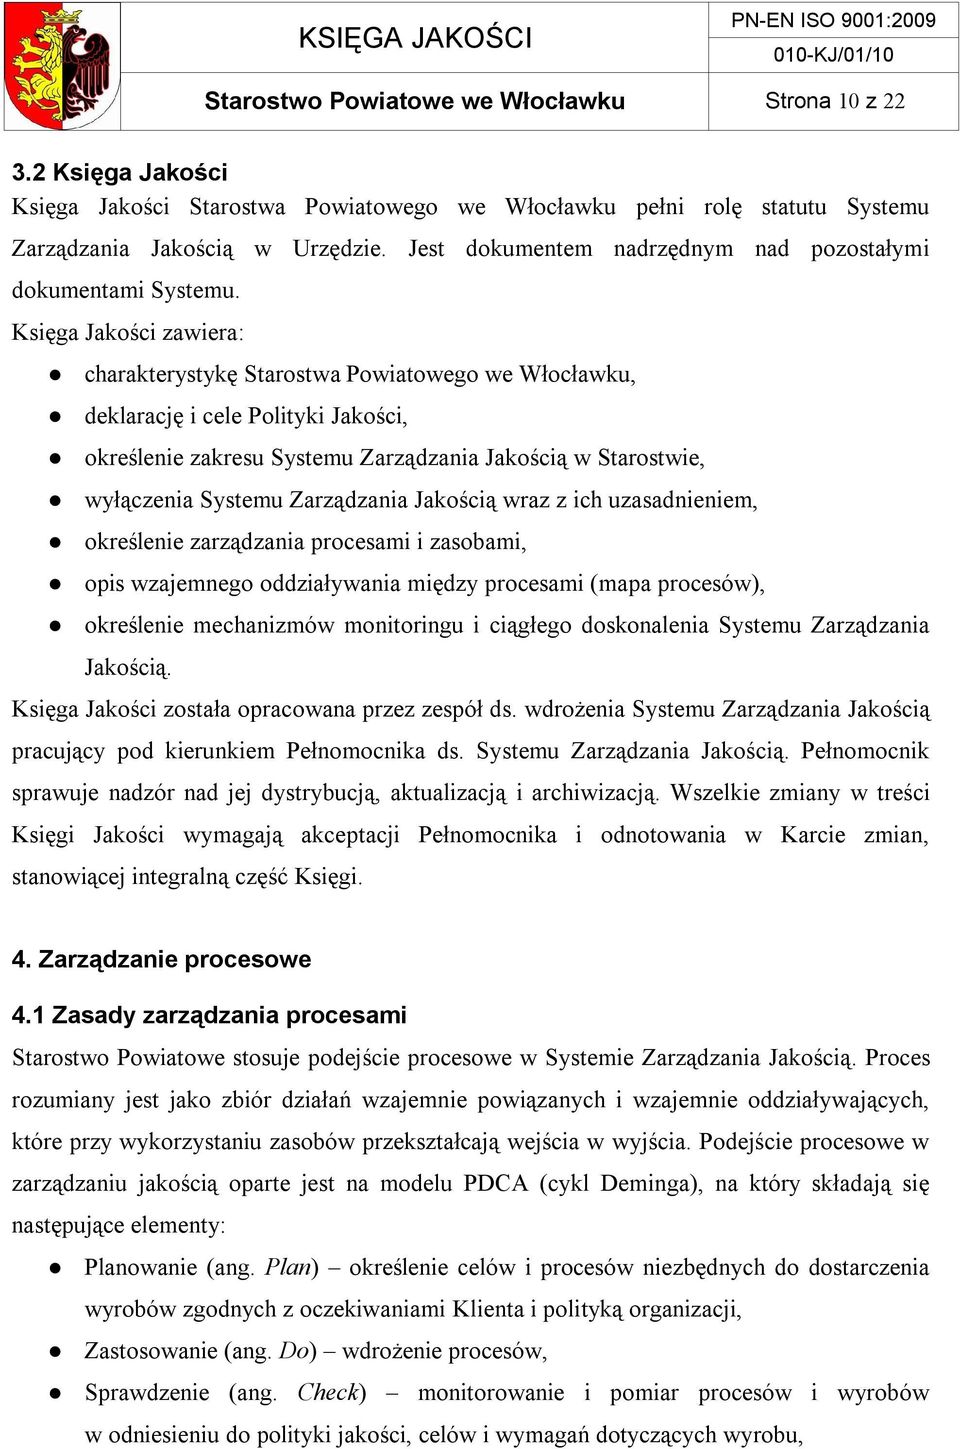 Księga Jakości zawiera: charakterystykę Starostwa Powiatowego we Włocławku, deklarację i cele Polityki Jakości, określenie zakresu Systemu Zarządzania Jakością w Starostwie, wyłączenia Systemu